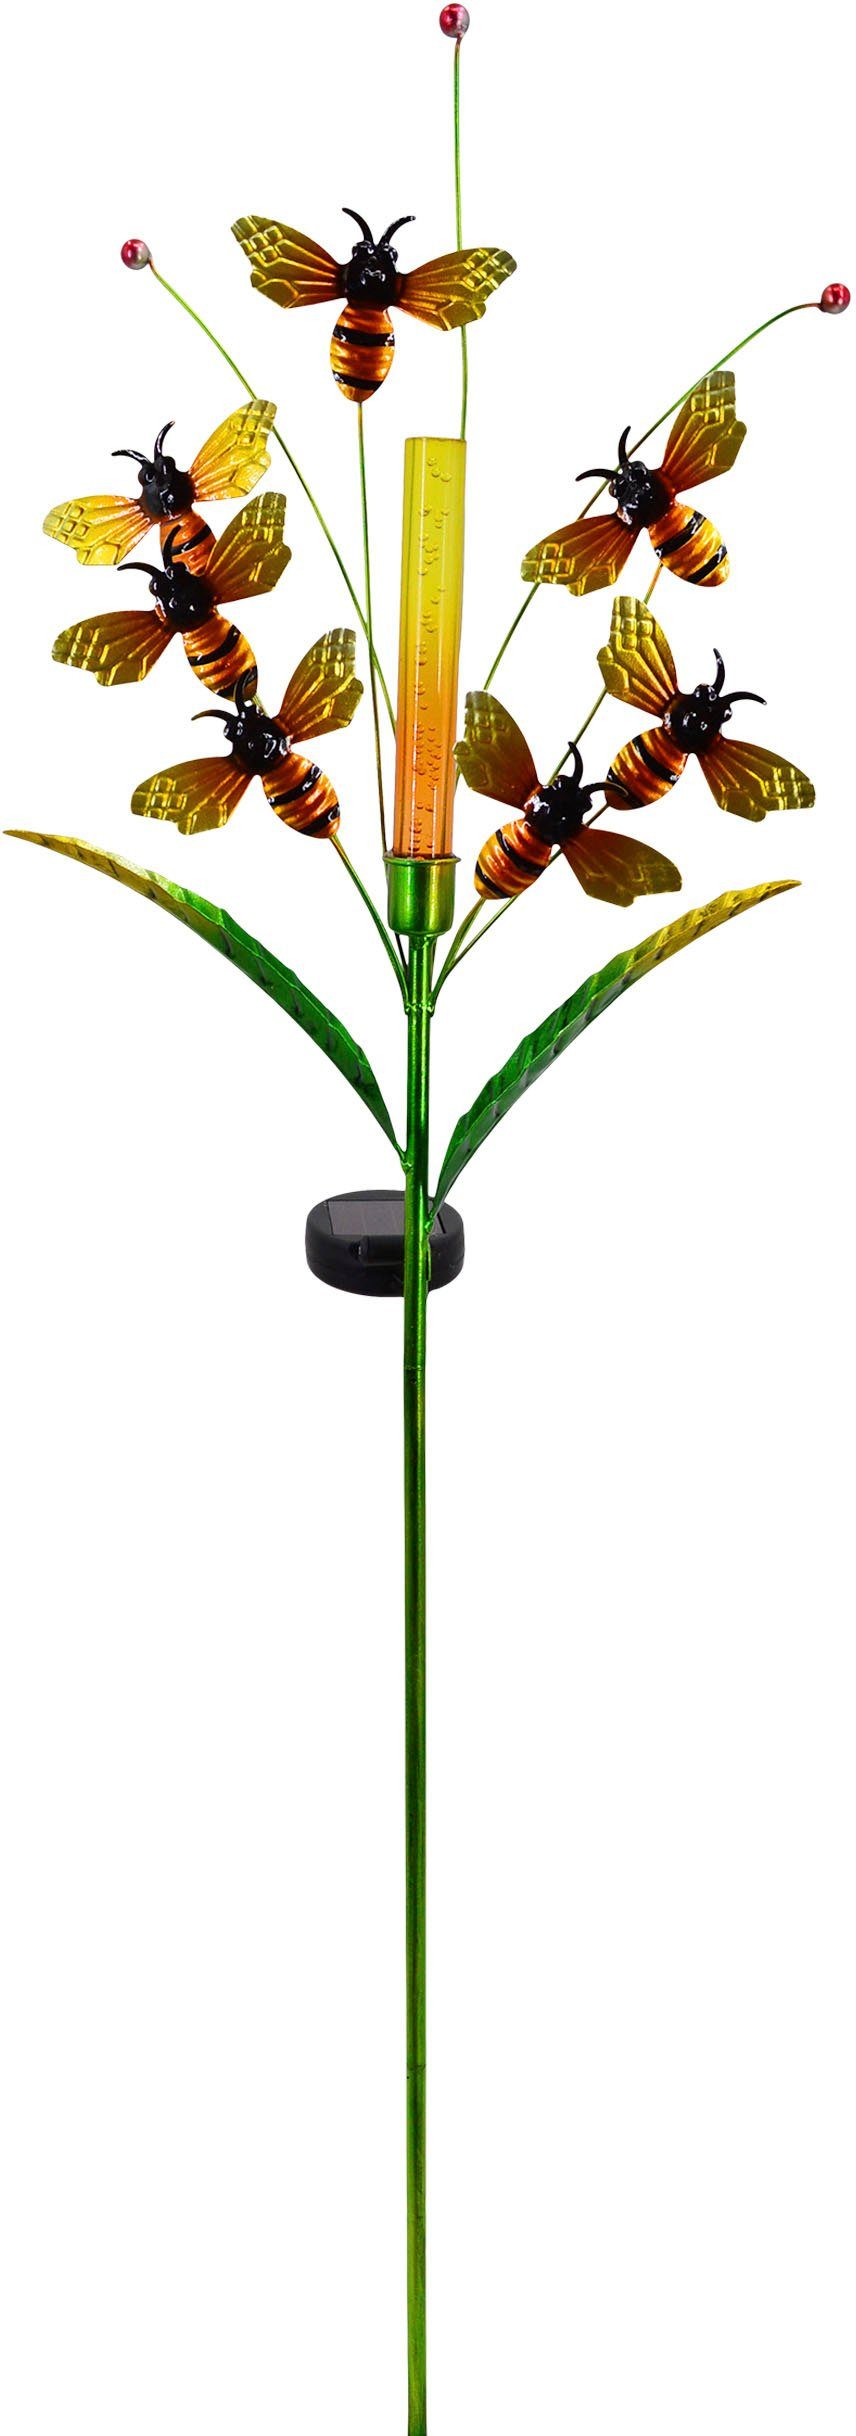 näve LED Solarleuchte Melissa, Tageslichtsensor, LED fest integriert, Warmweiß, Blüte mit "schwirrenden" Bienen, Höhe ca. 98,5cm, warmweiß, bunt